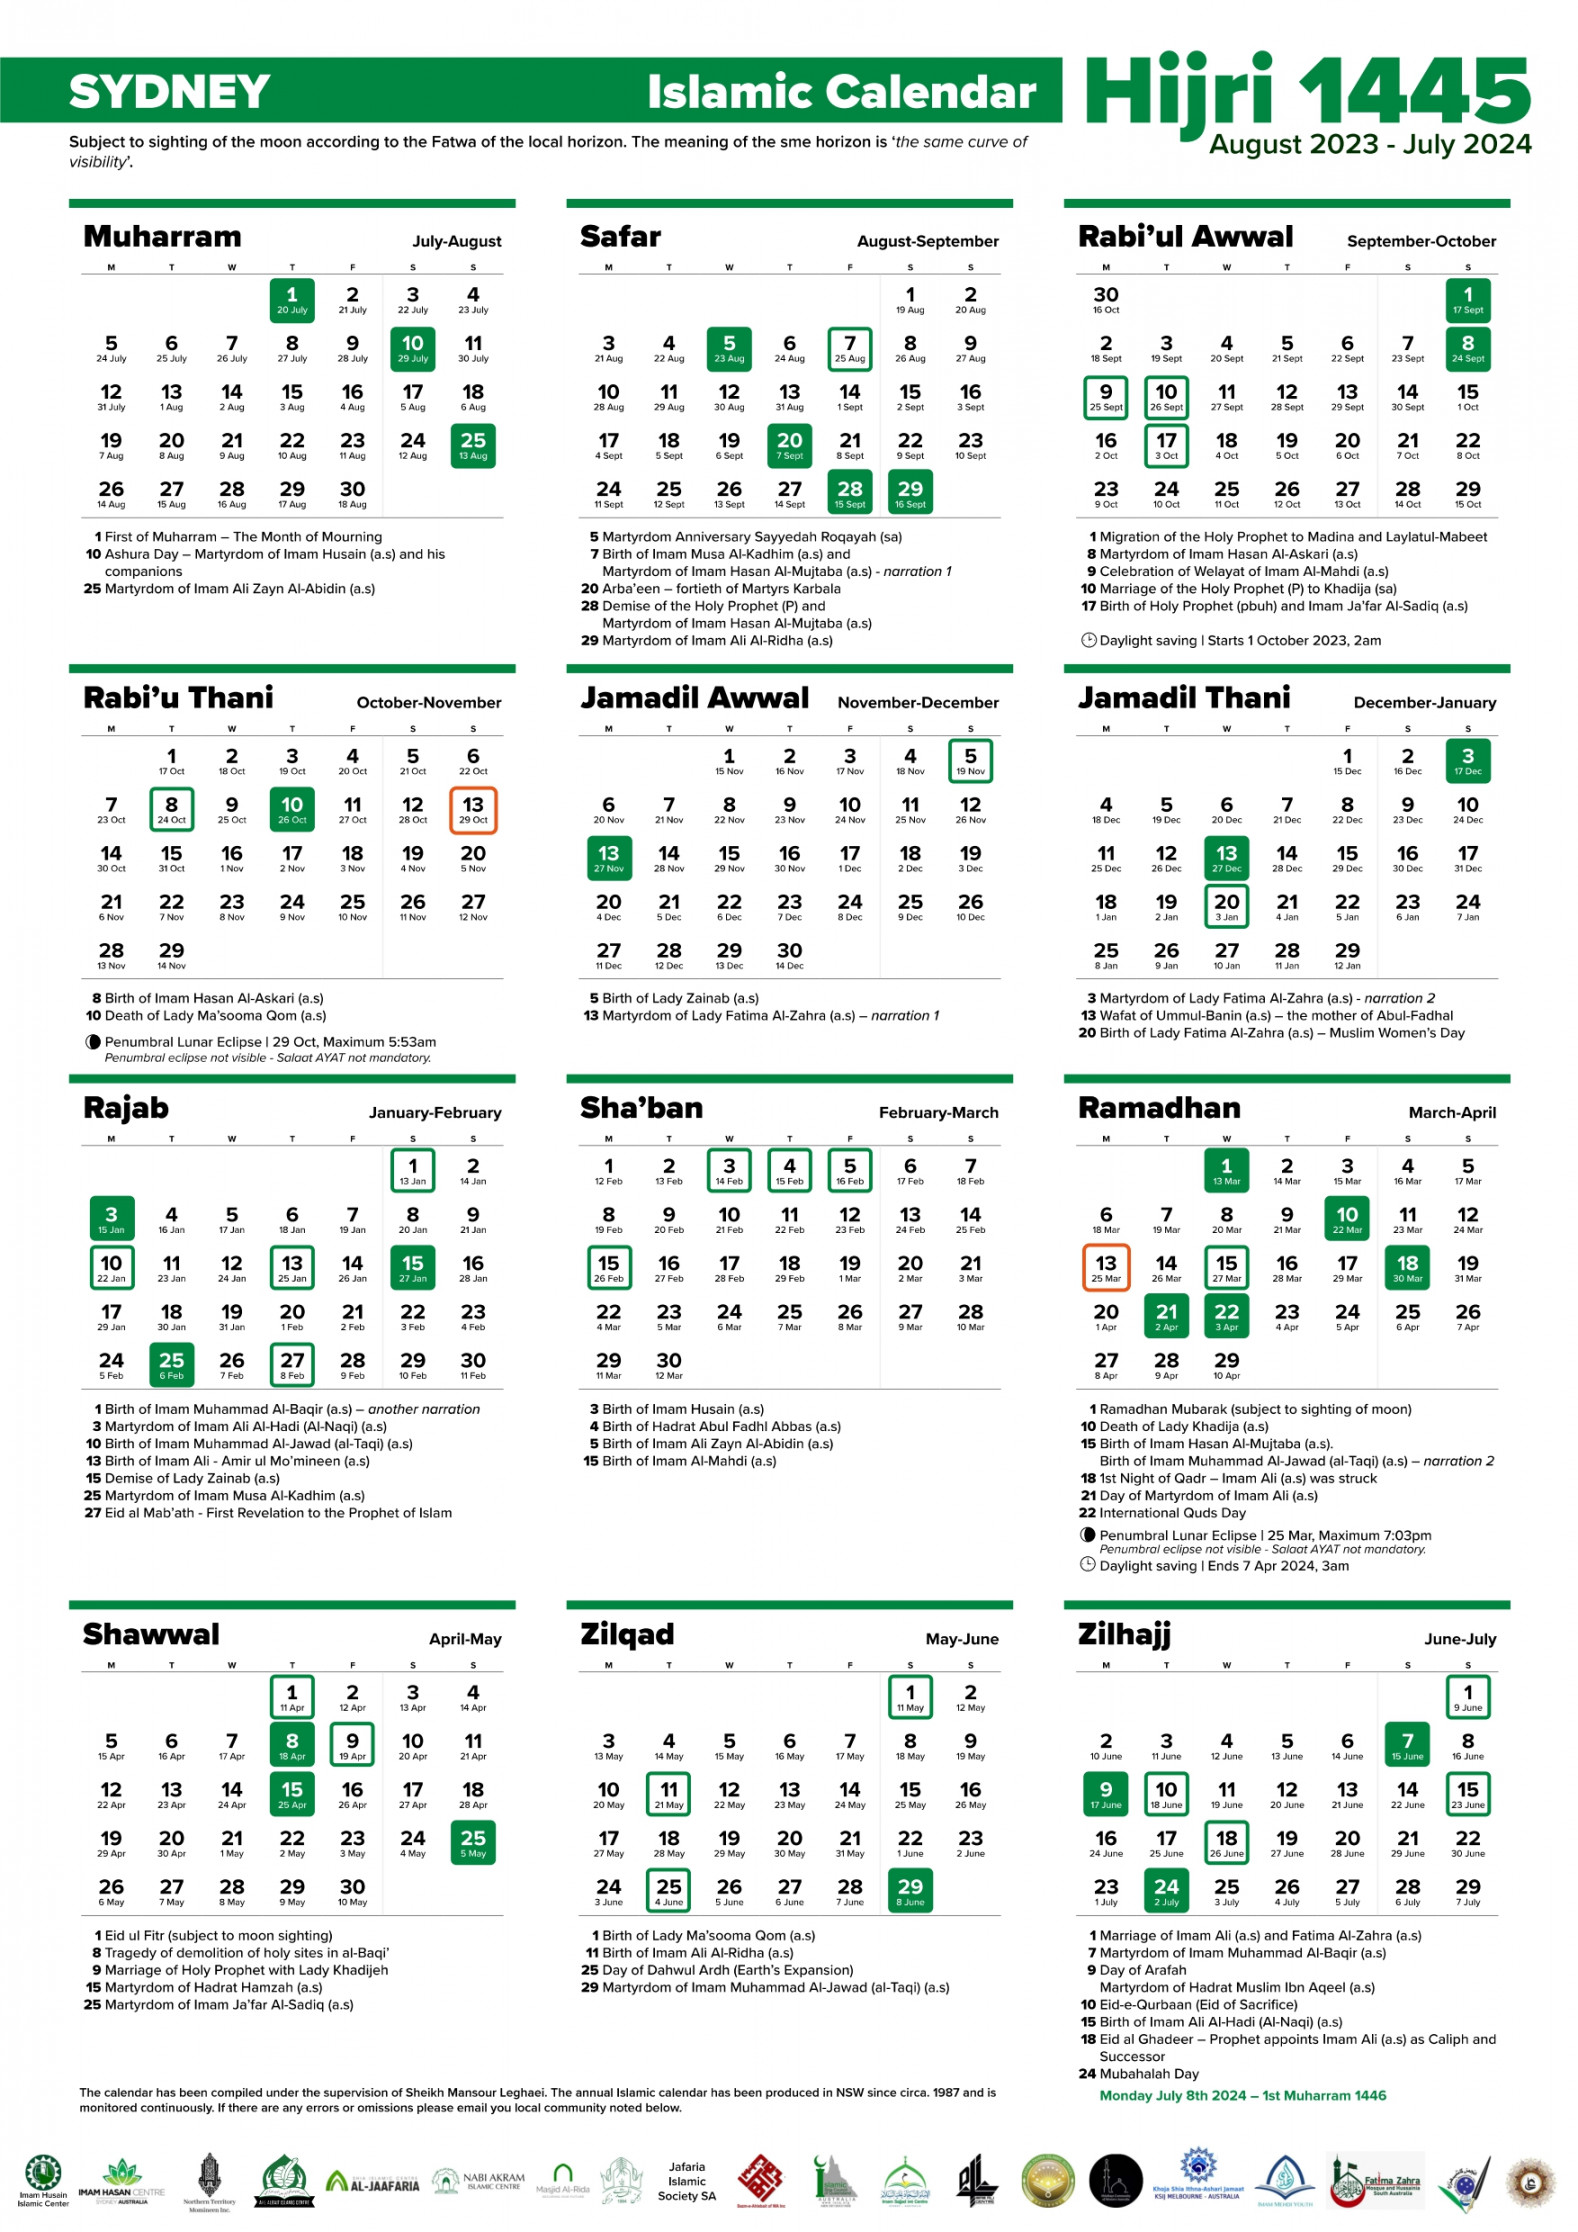 Annual Islamic Calendar AH / - AD – Imam Husain